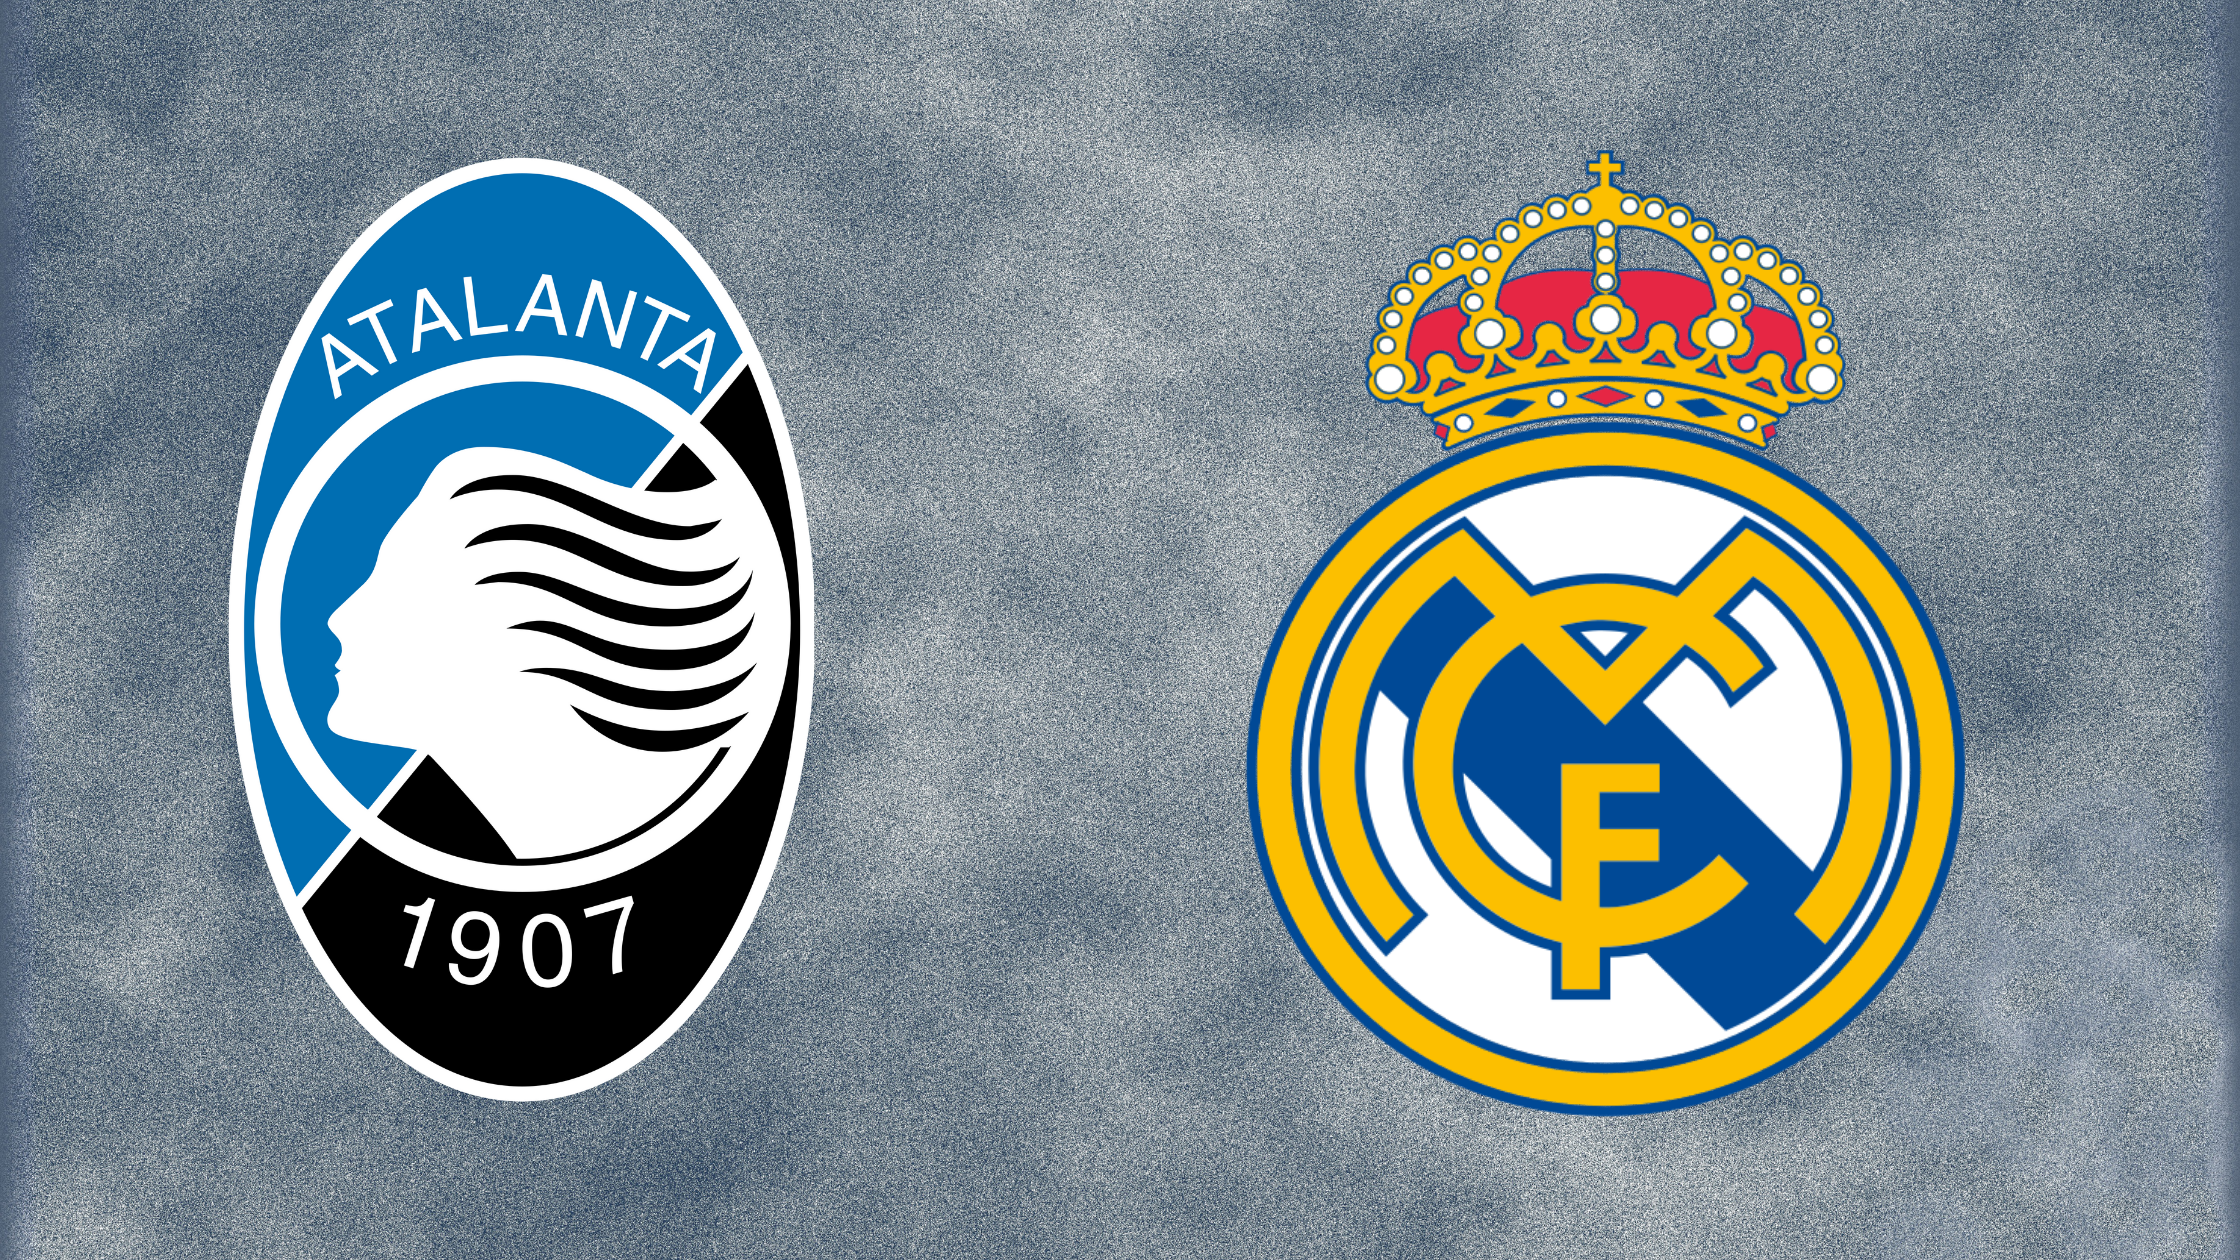 Atalanta Bergamo - Real Madrid treffen im Champions-League-Achtelfinale 2020/2021 aufeinander: heute, Spiele, Live-Stream, Live-Ticker, TV-Übertragung, Champions-League-Achtelfinale, Konferenz, heute.